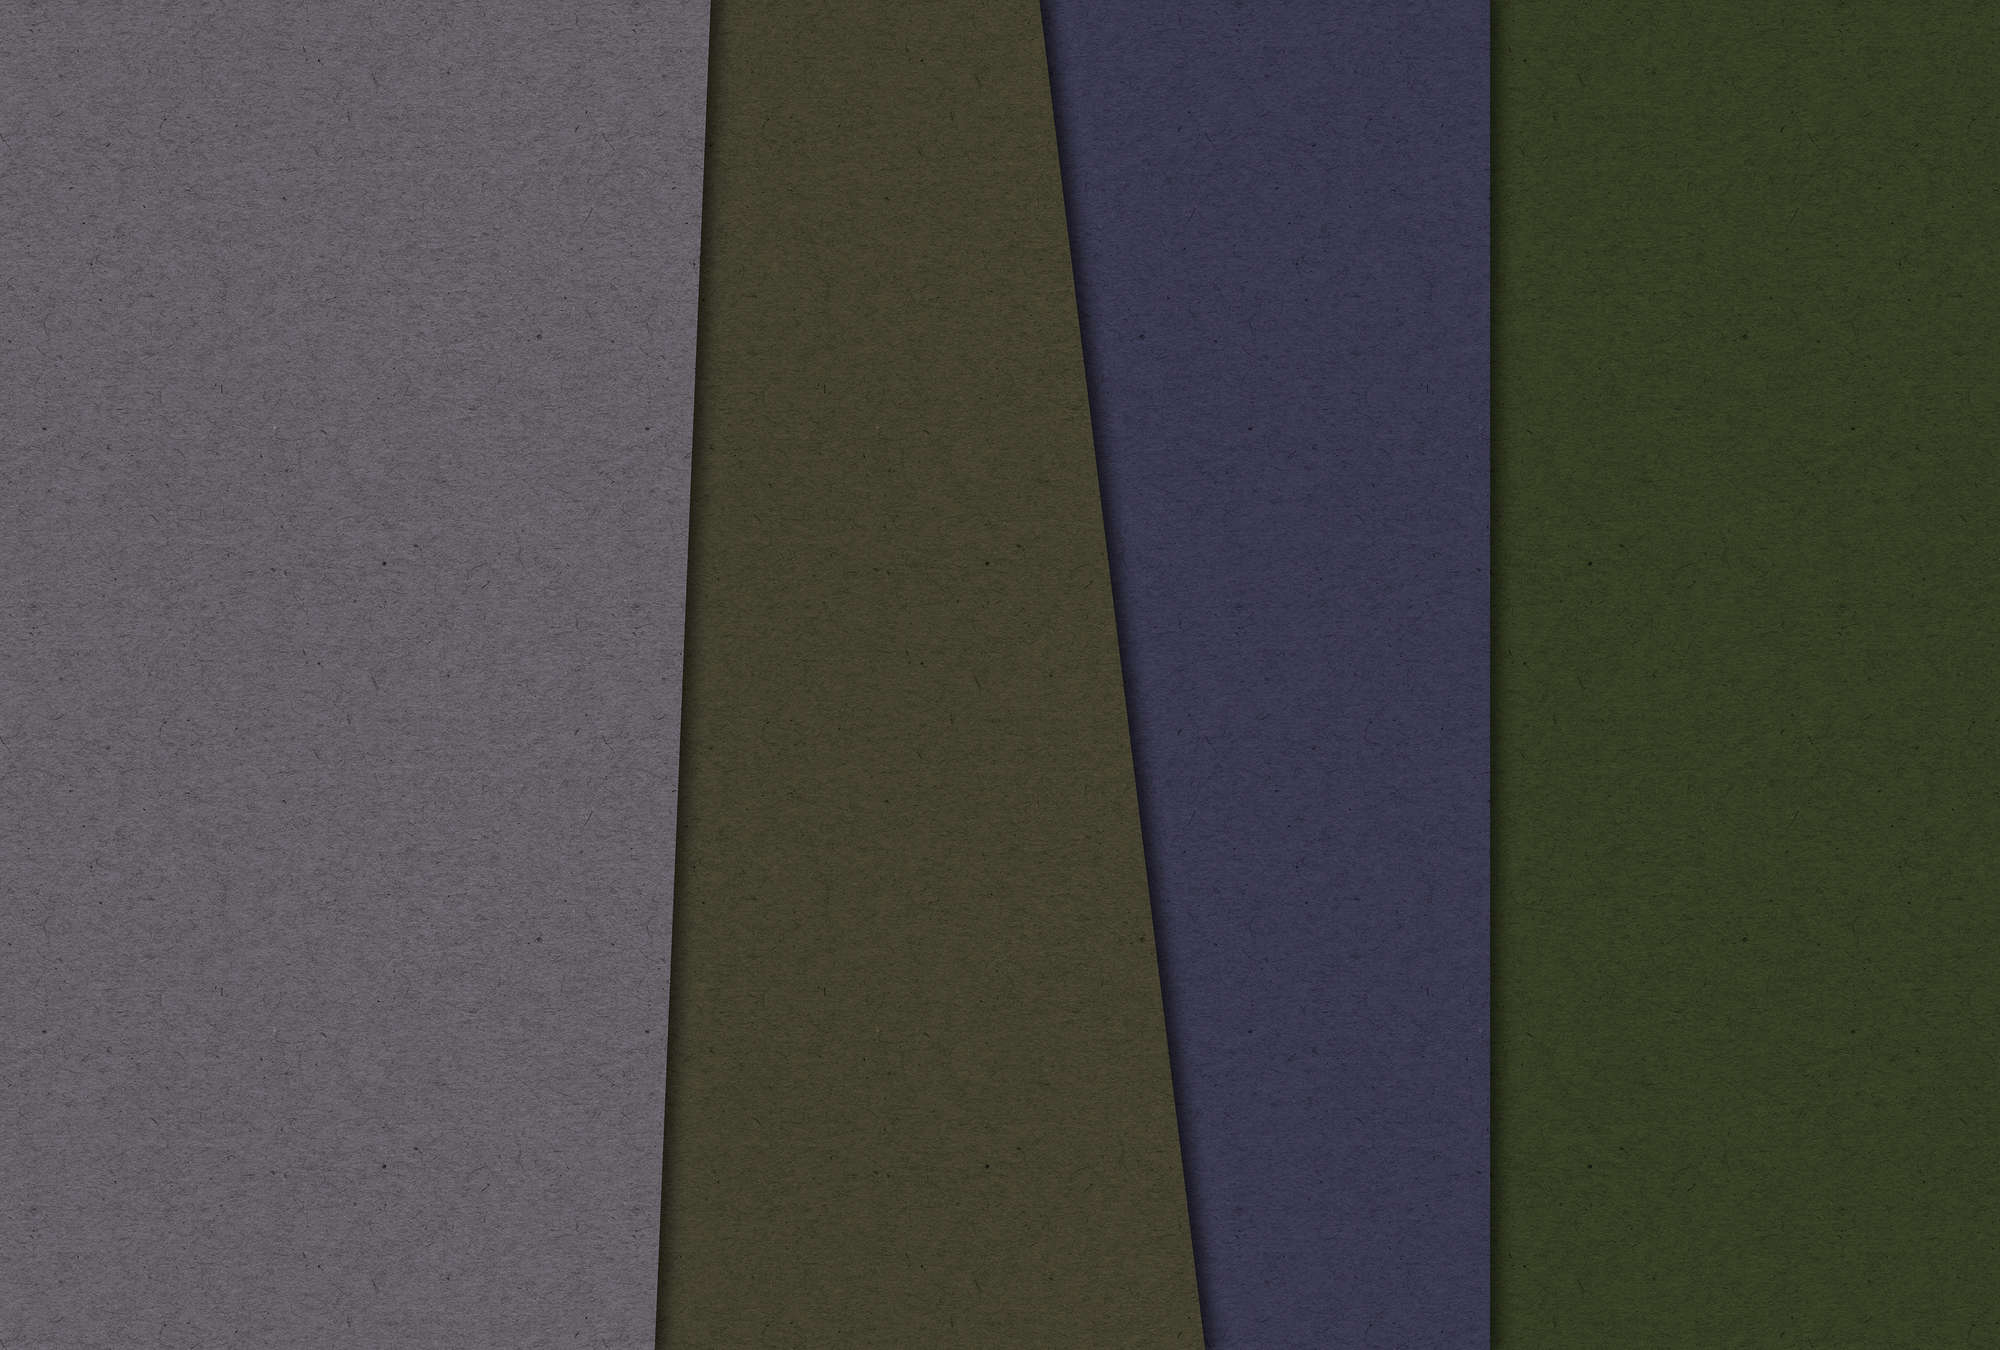             Layered Cardboard 3 - behang minimalistisch & abstract - karton structuur - groen, violet | structuur niet-geweven
        